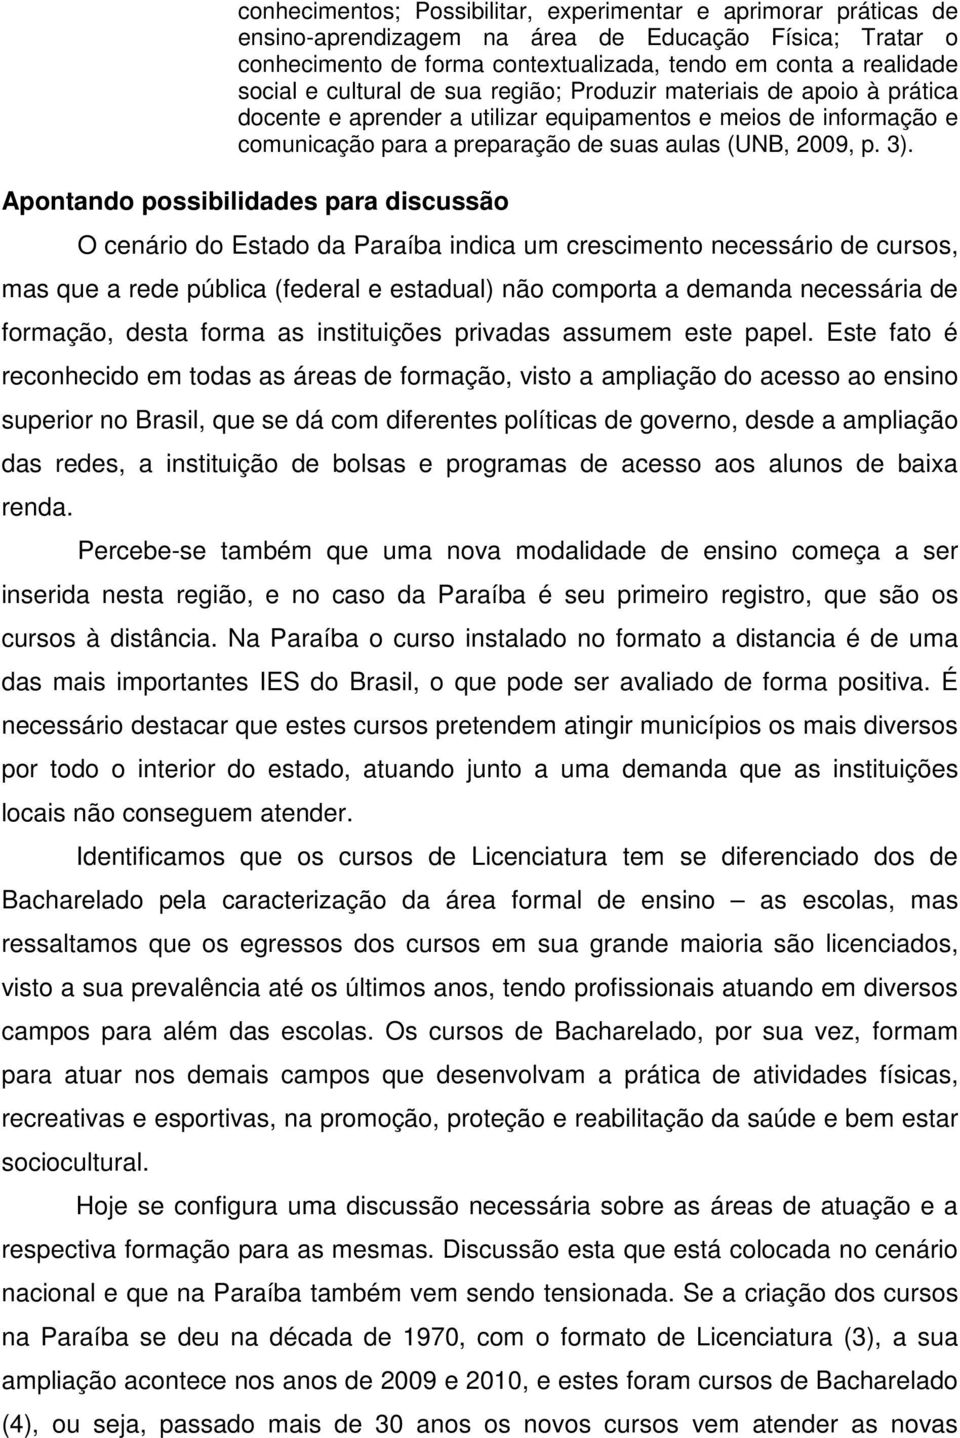 Apontando possibilidades para discussão O cenário do Estado da Paraíba indica um crescimento necessário de cursos, mas que a rede pública (federal e estadual) não comporta a demanda necessária de